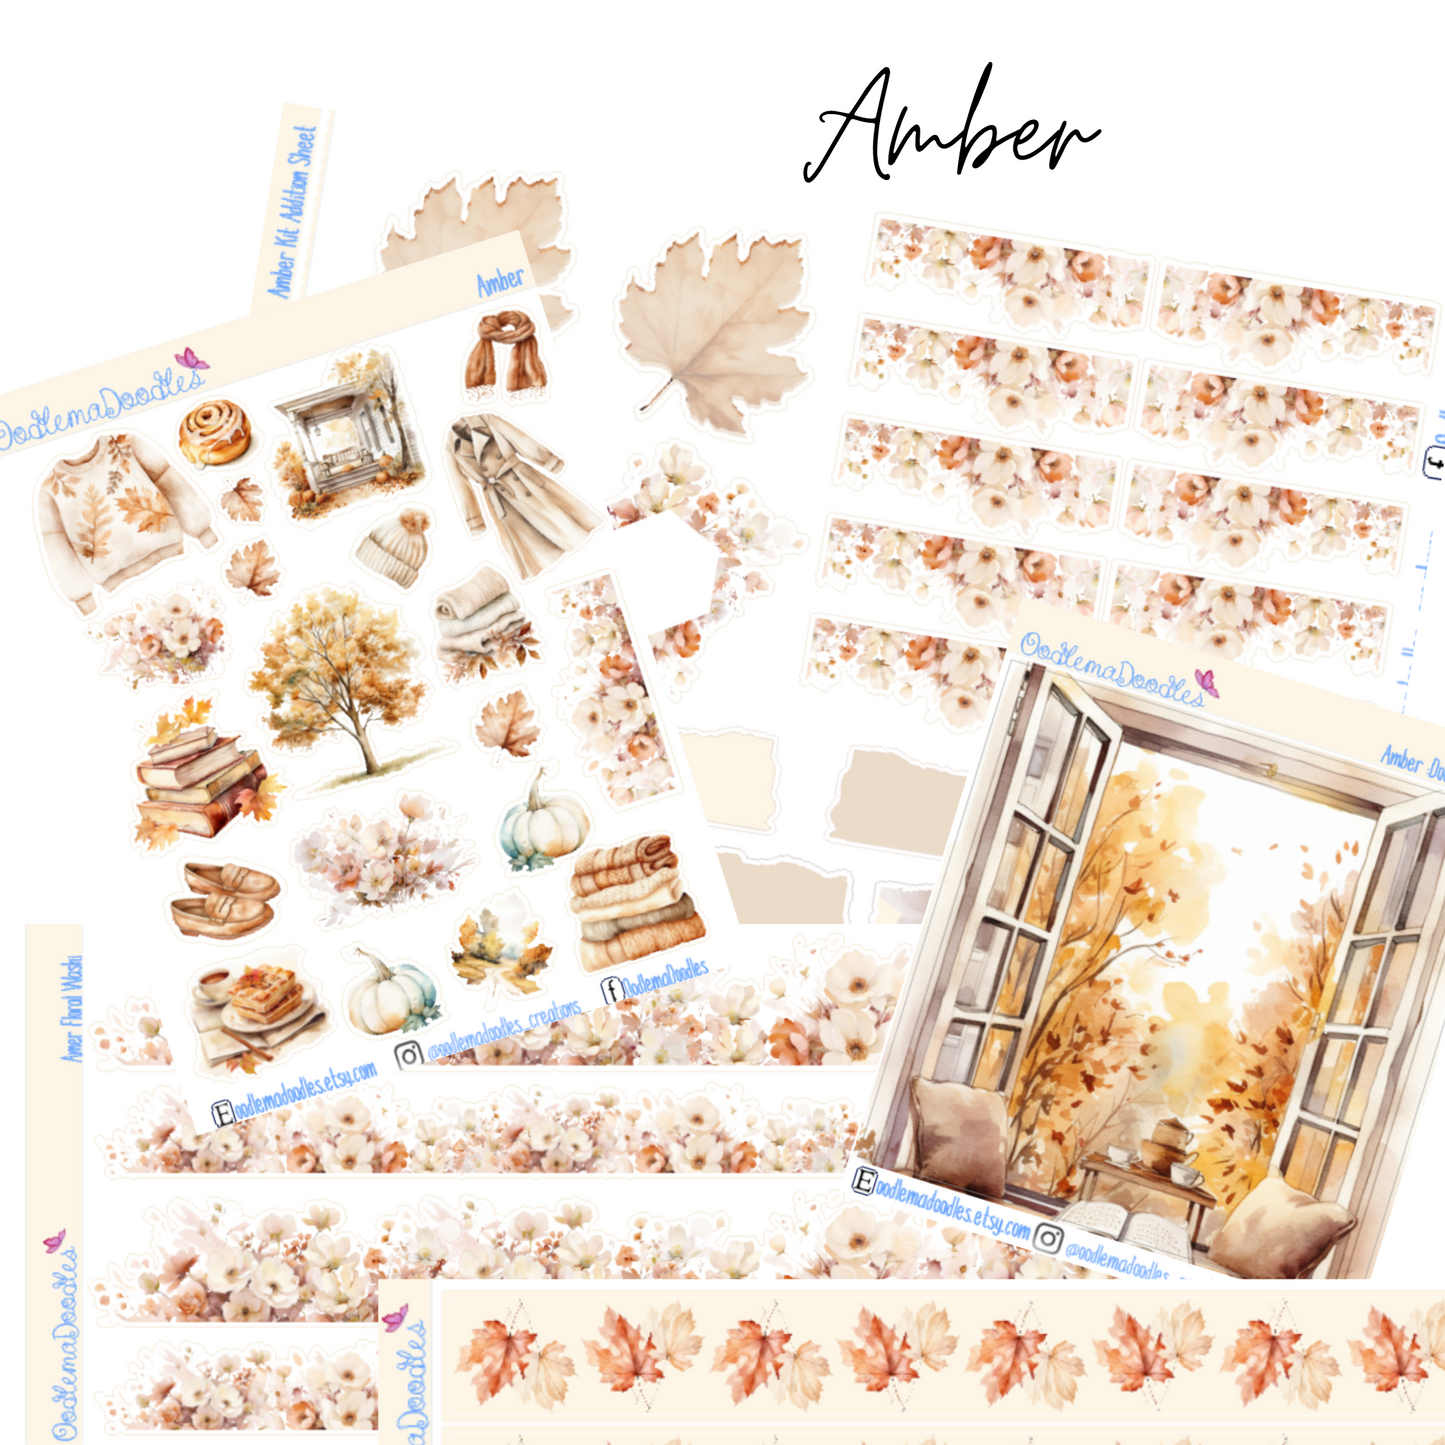 Amber Addon & Extra Washi Options